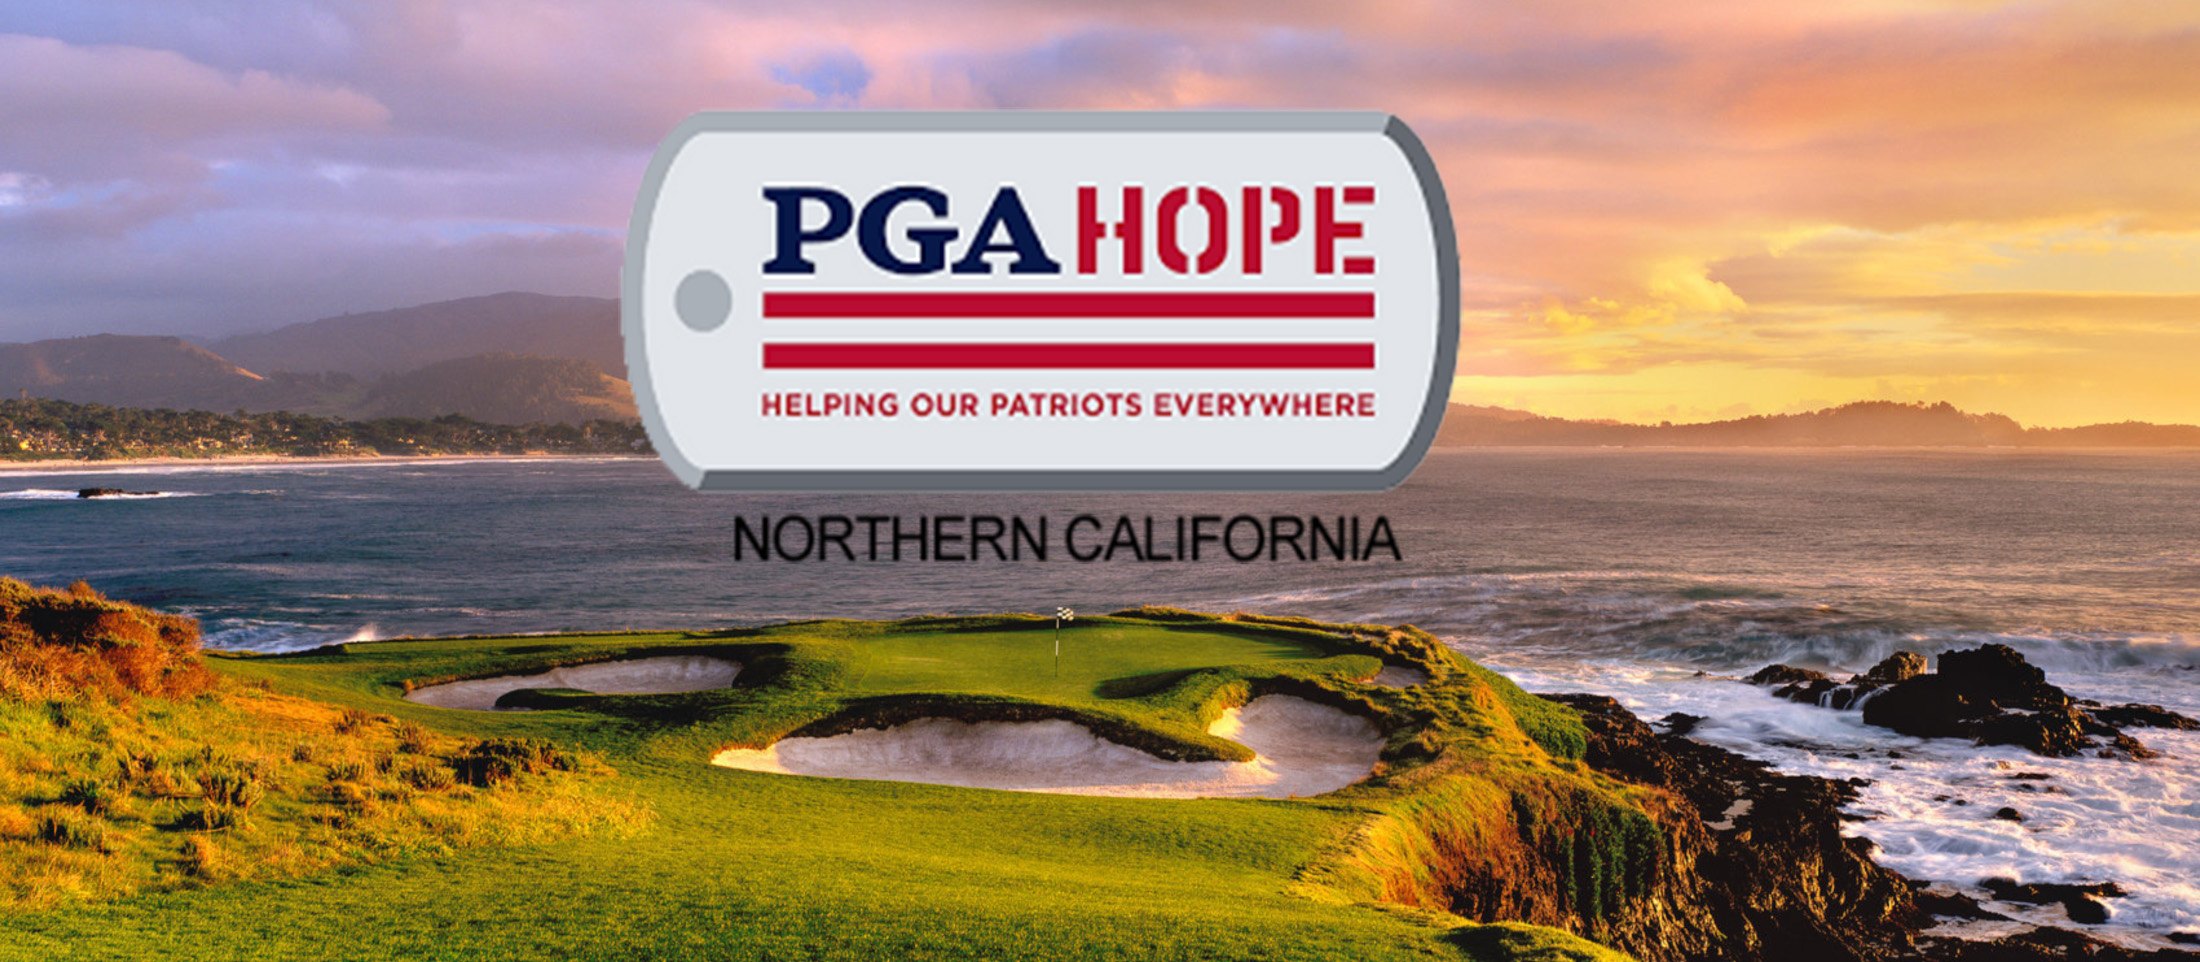 The PGA HOPE